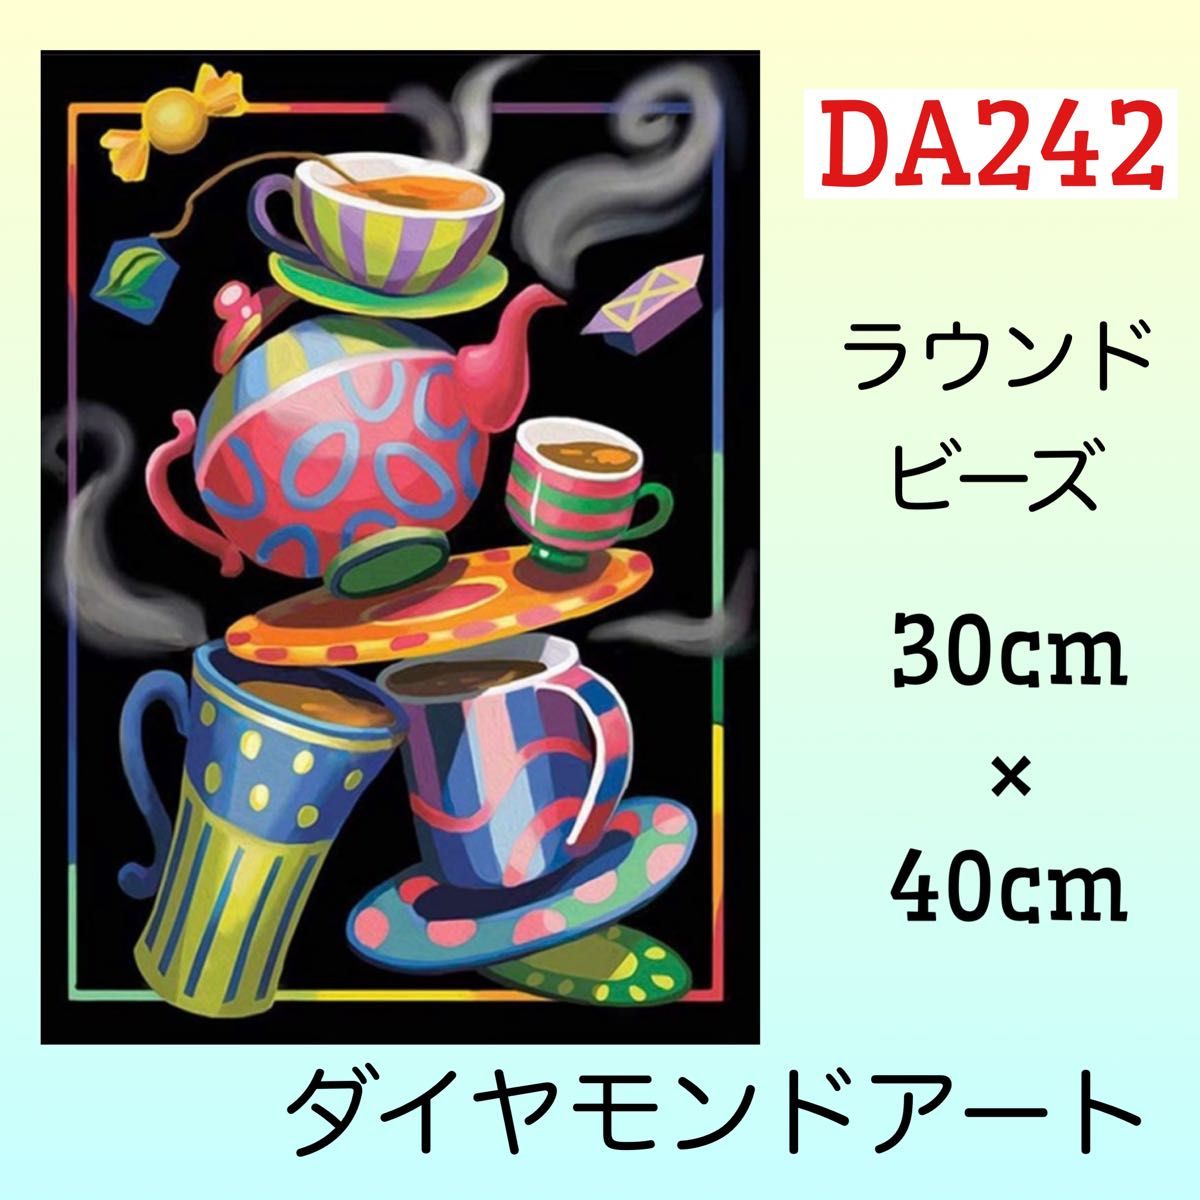 DA242ダイヤモンドアートキット楽しいお茶会